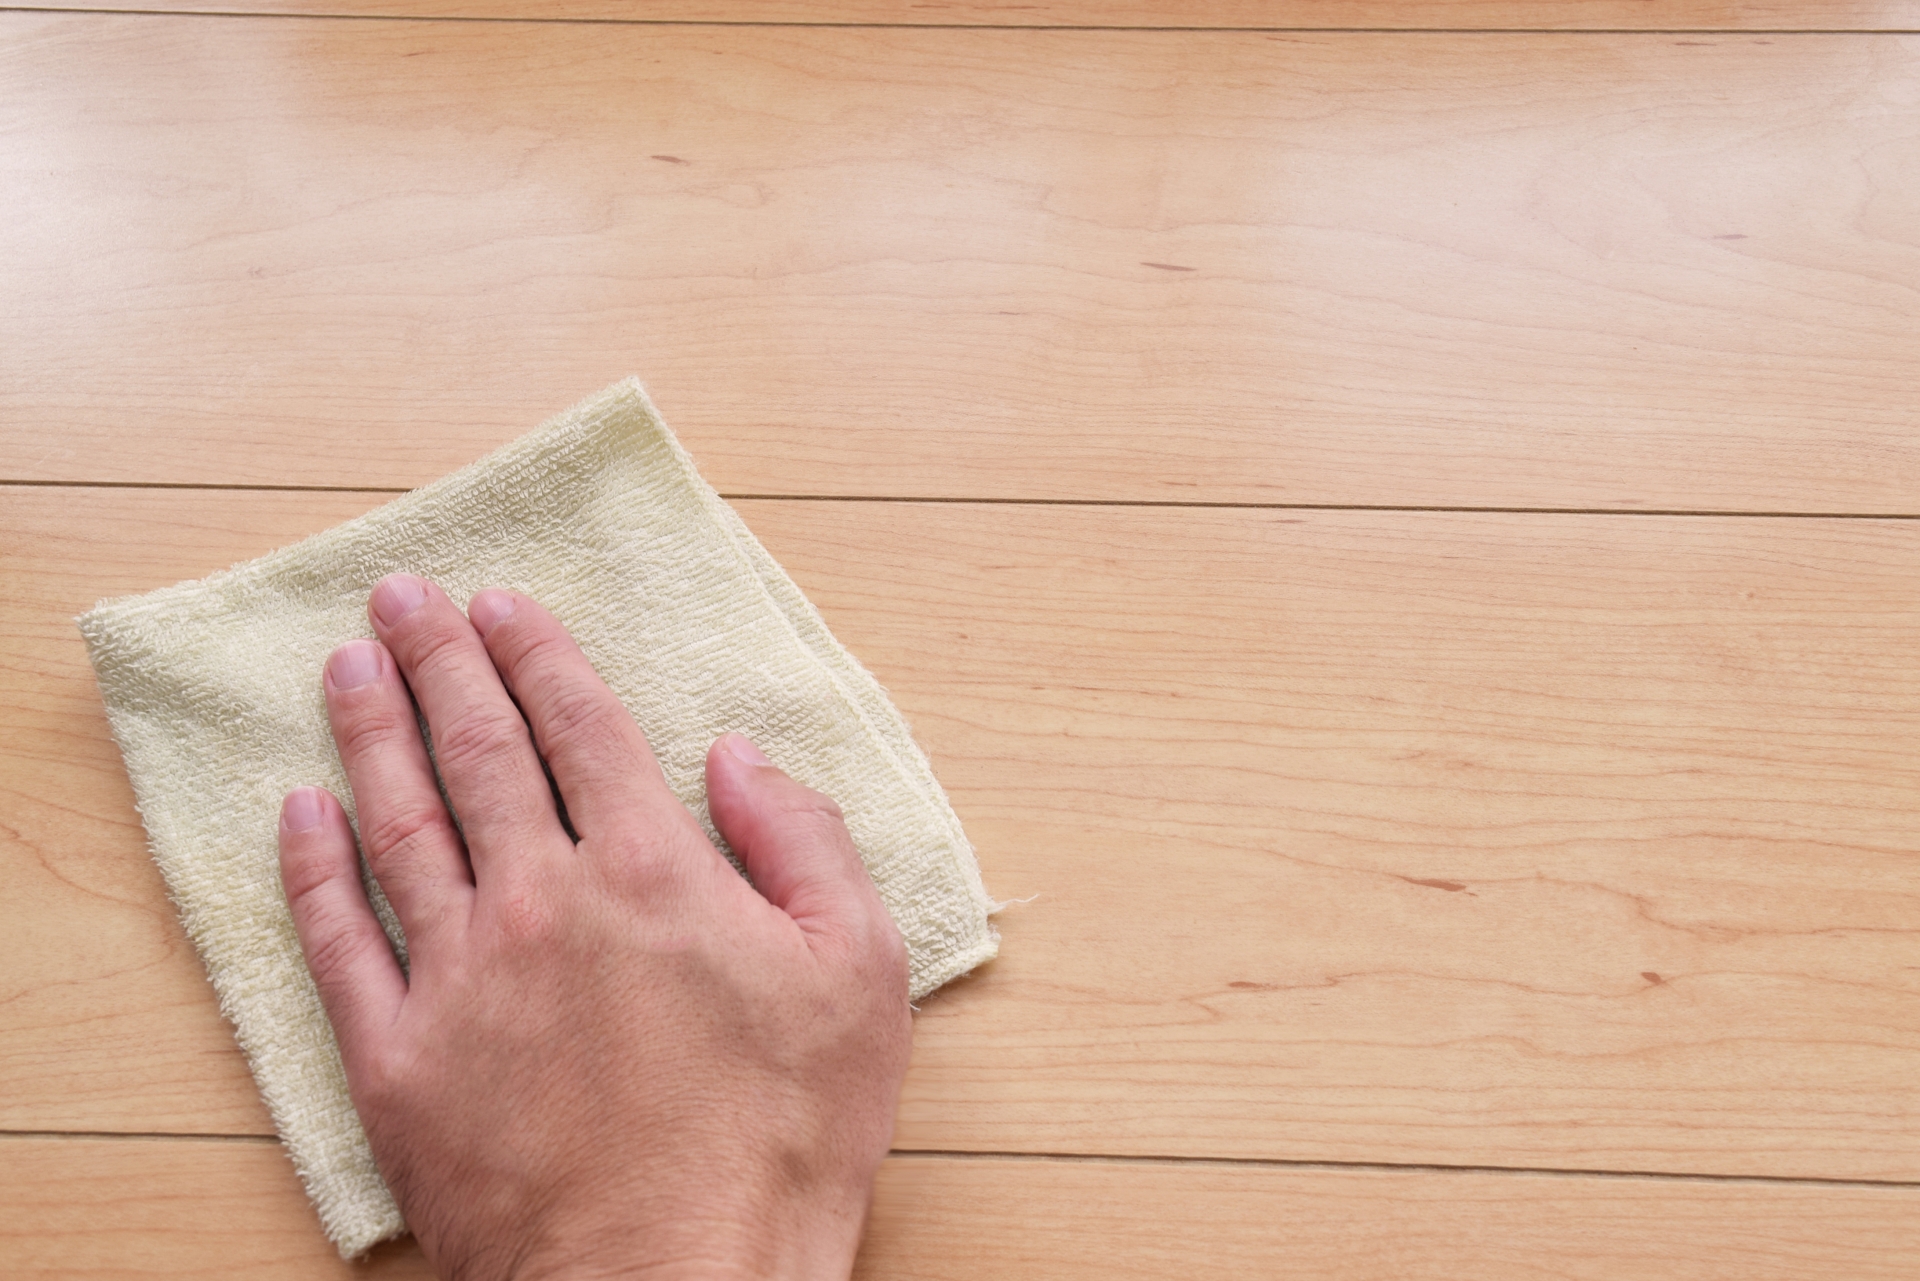 【床の拭き掃除】赤ちゃんのいる家庭の安心安全な床の掃除方法